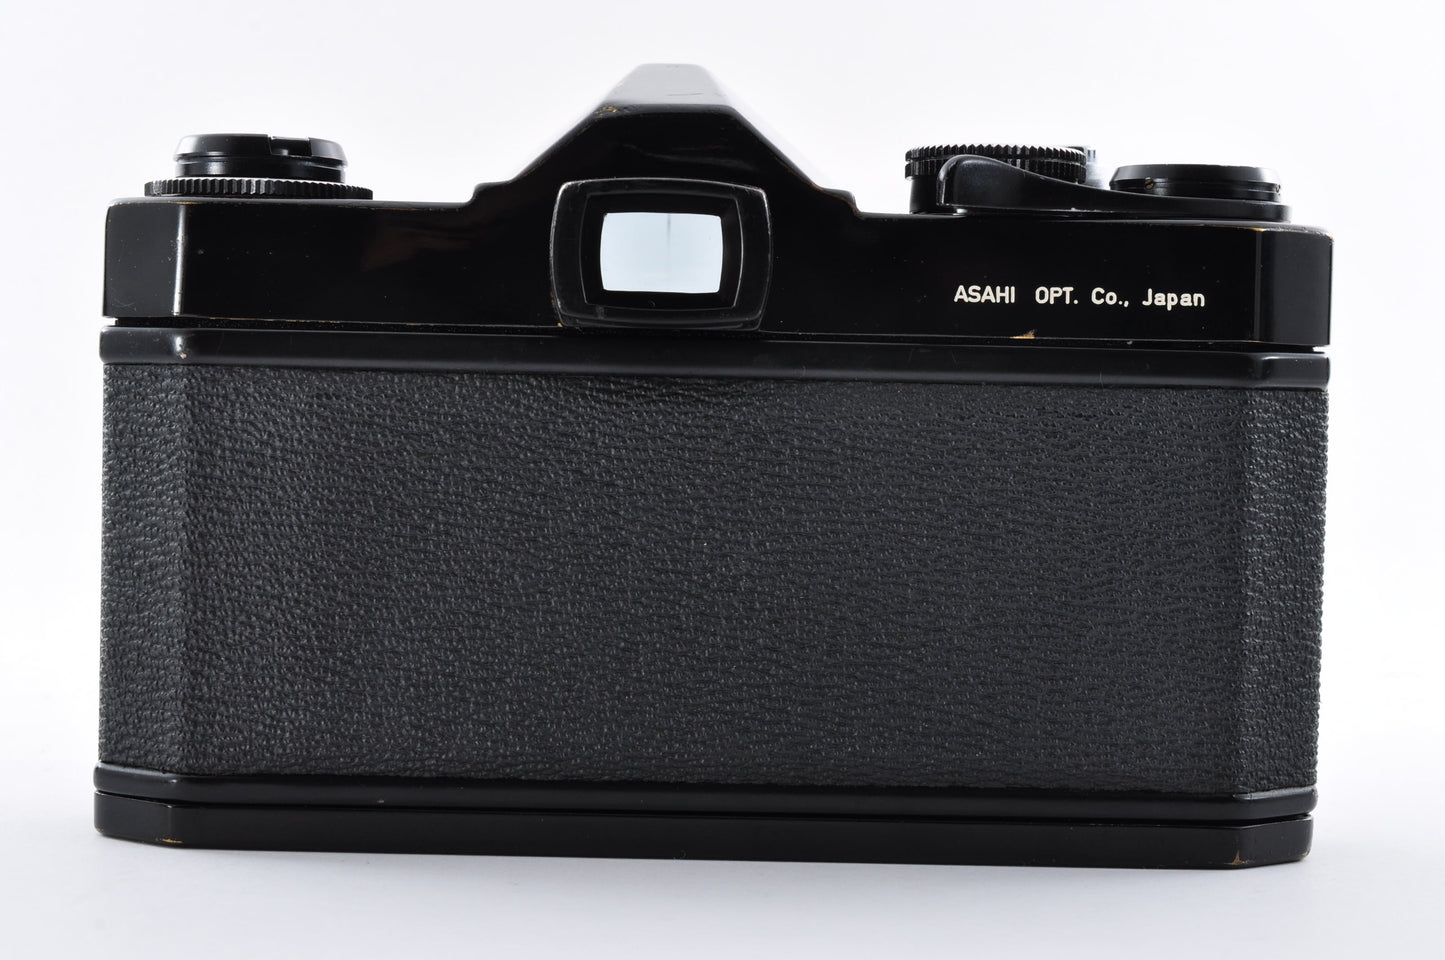 Pentax SL Black 35mm SLR Film Camera Super Takumar 55mm f1.8 From Japan #3040327